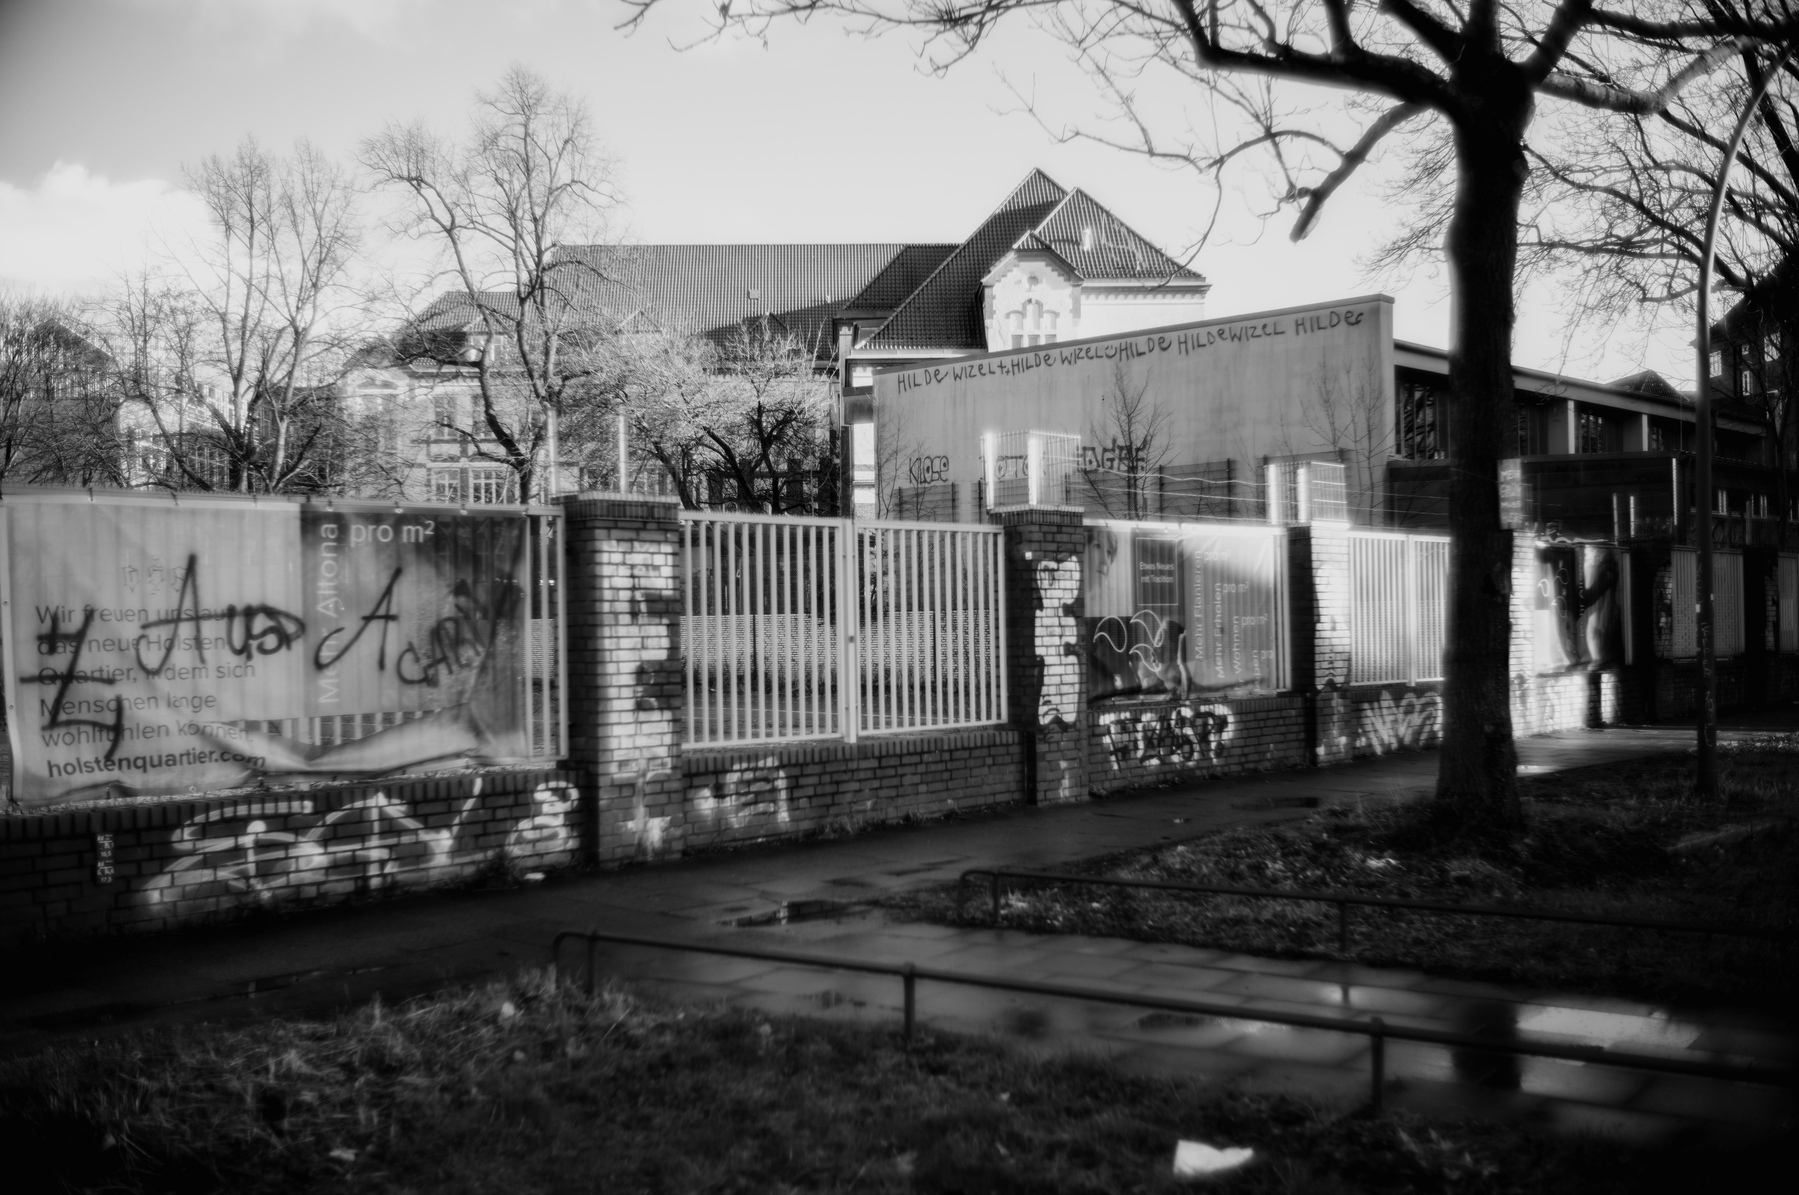 Walls with graffiti in Hamburg